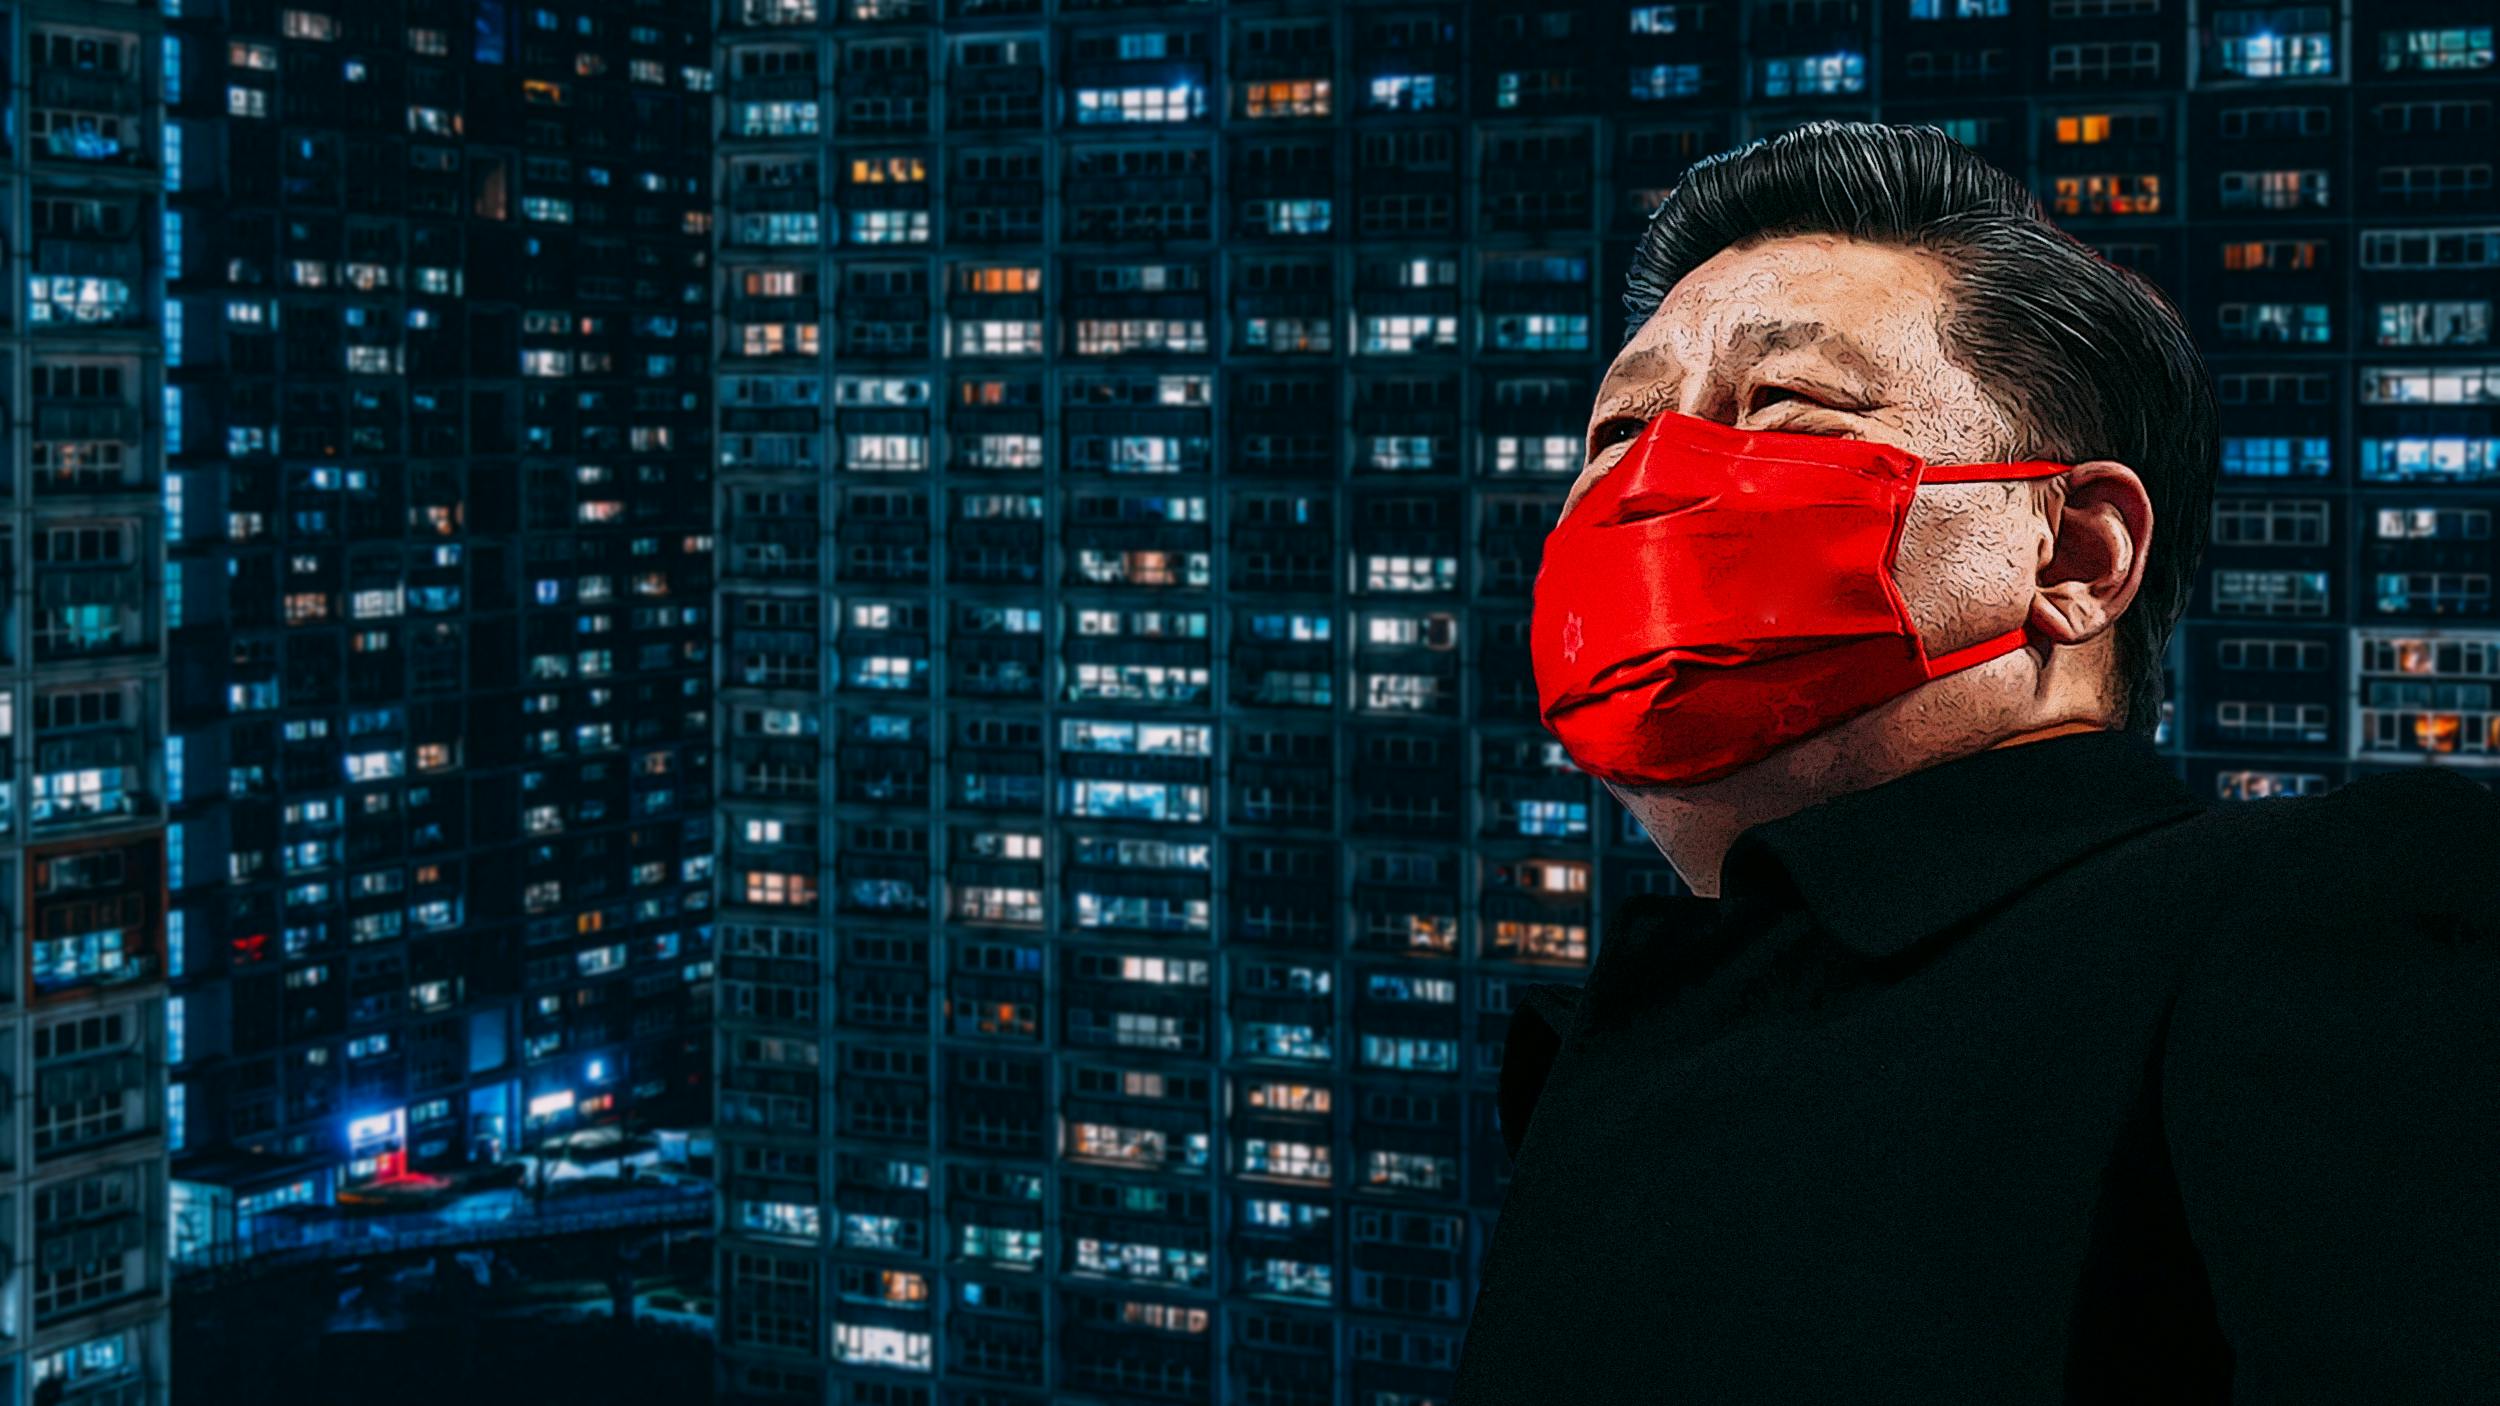 Xi Jinping steht vor einem Hochbaus bei Nacht. Er trägt eine Rote Maske und blickt in Richtung Himmel.